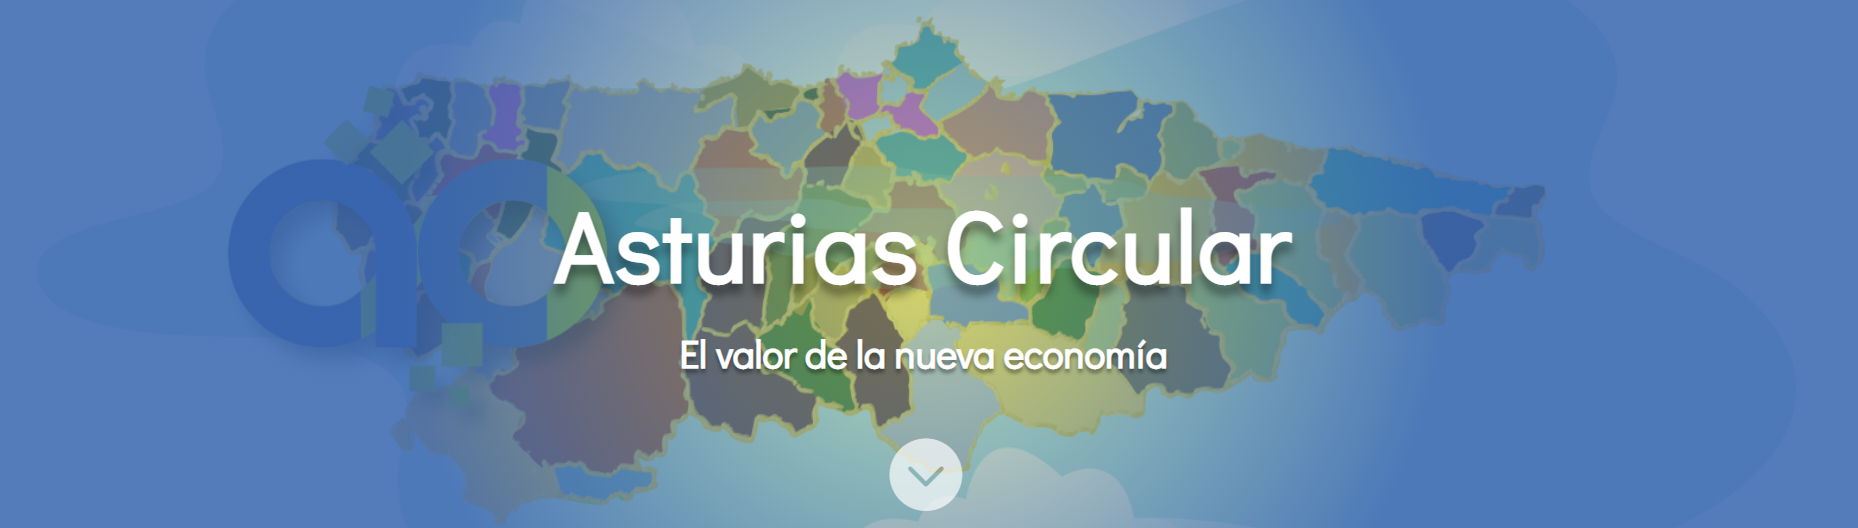 Asturias Circular